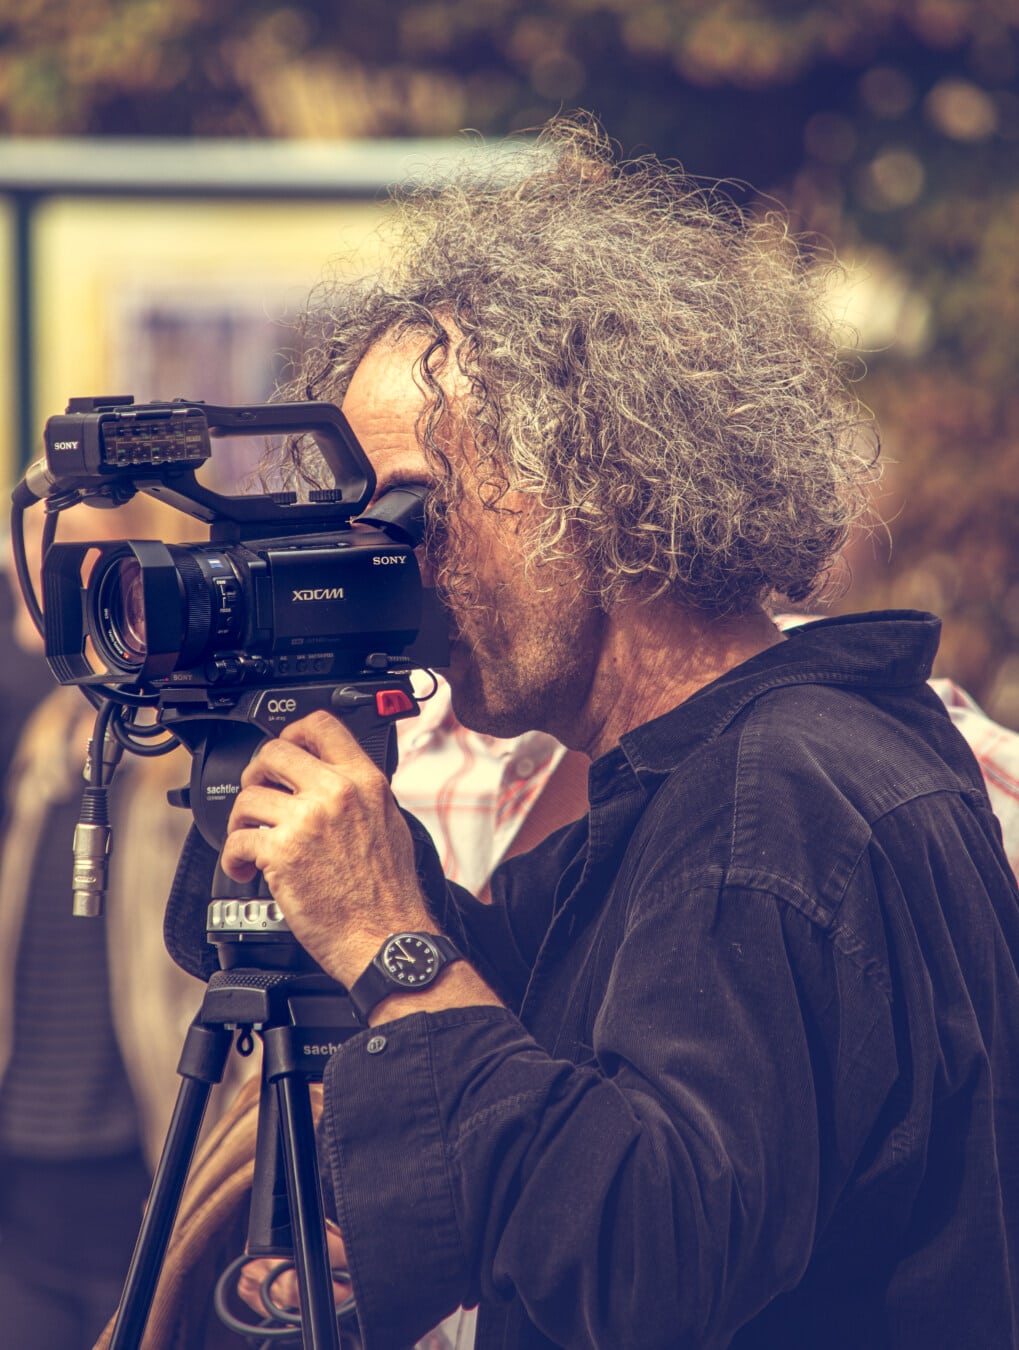 ビデオカメラ, ビデオの録画, レコーディング, 映画, 写真家, テレビ, 備品, レンズ, 縦方向, ジャーナリスト